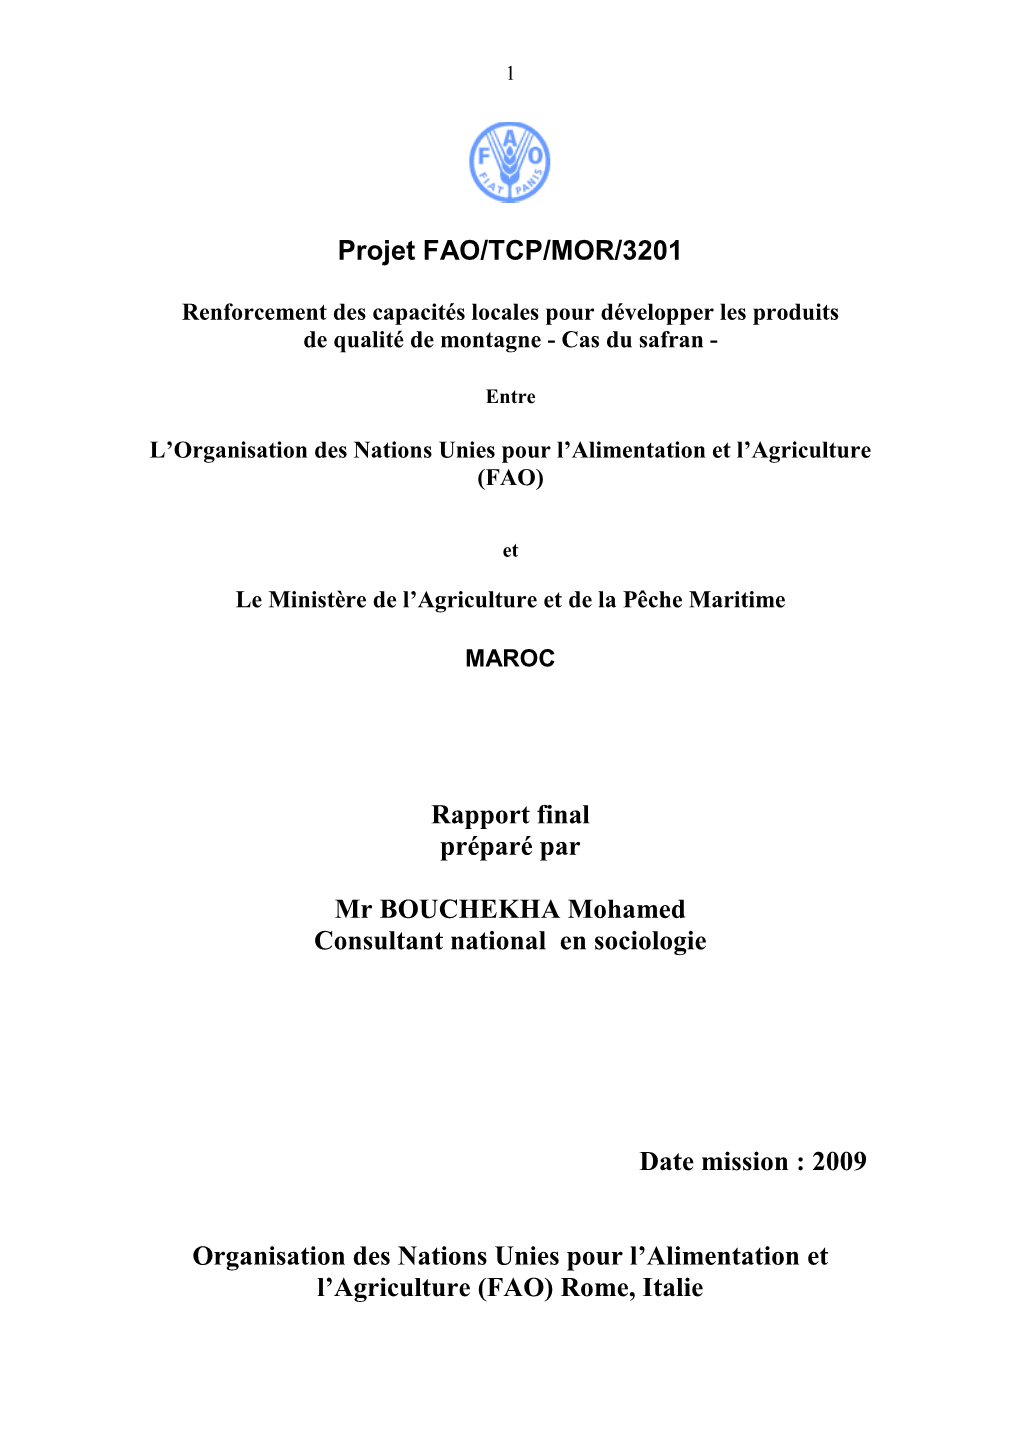 Projet FAO/TCP/MOR/3201 Rapport Final Préparé Par Mr BOUCHEKHA